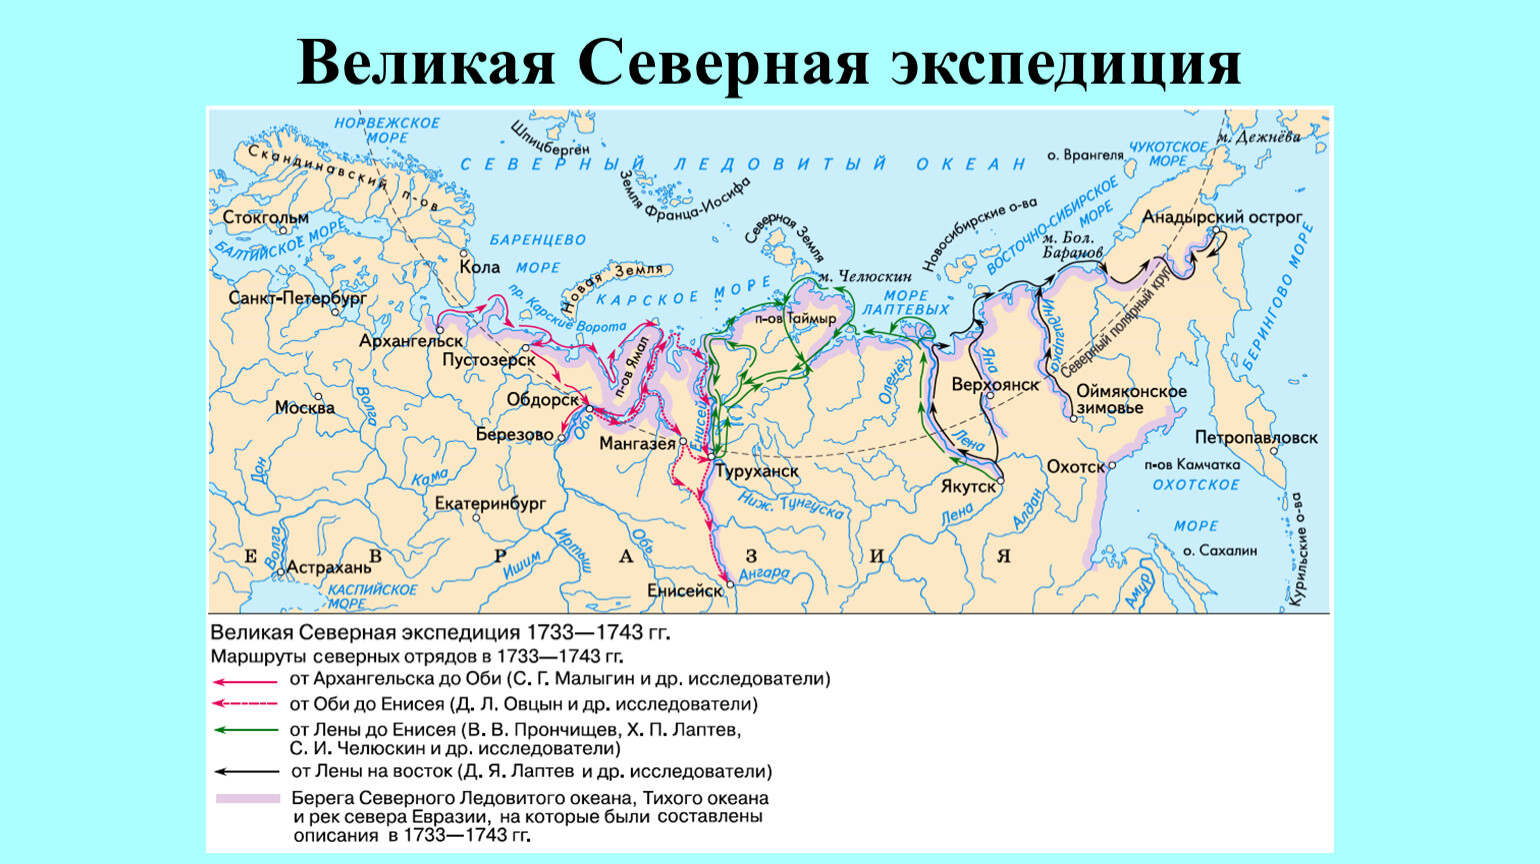 Великая Северная Экспедиция 1733